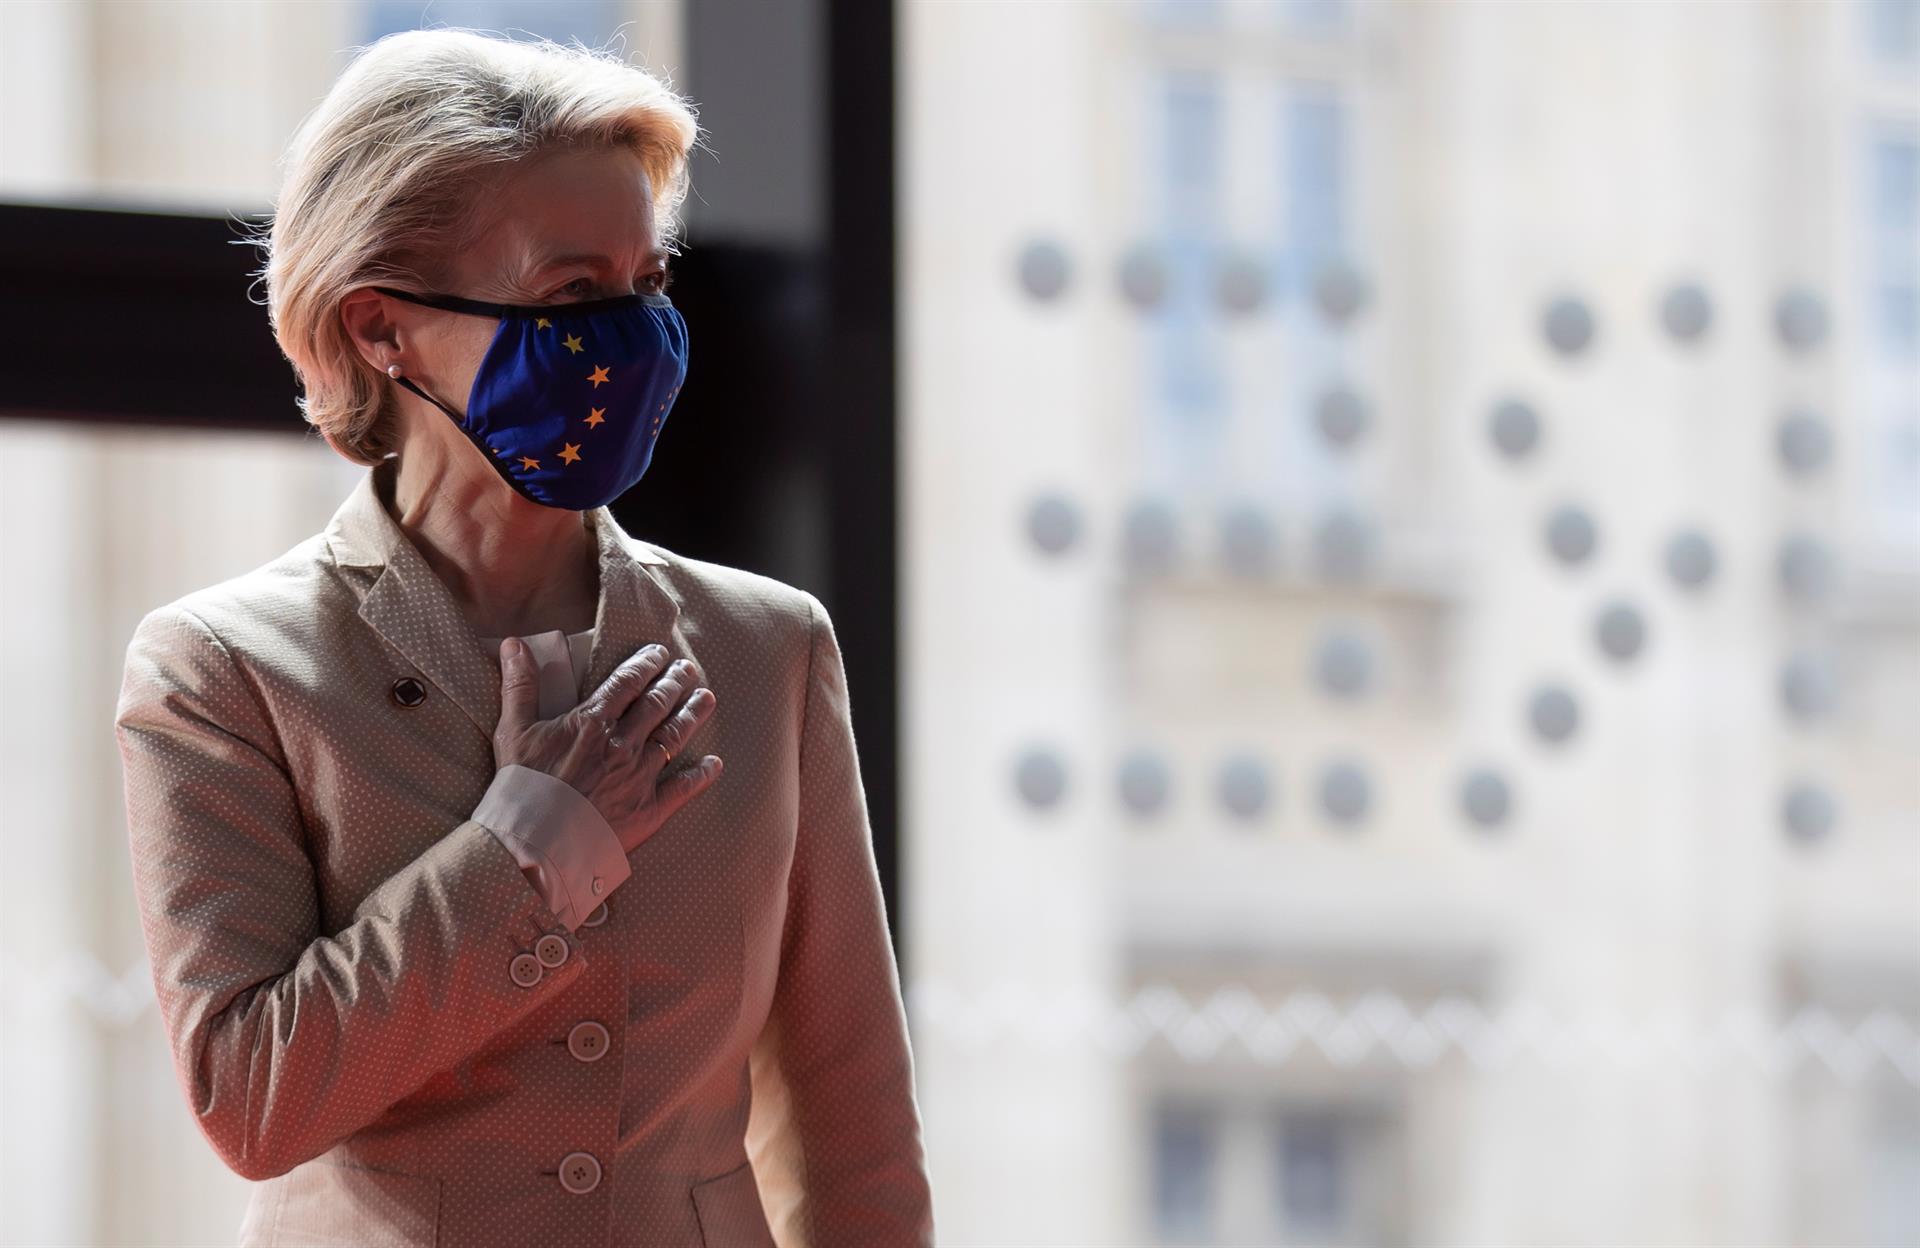 A presidente da Comissão Europeia, Ursula von der Leyen, usa máscara com bandeira do bloco econômico